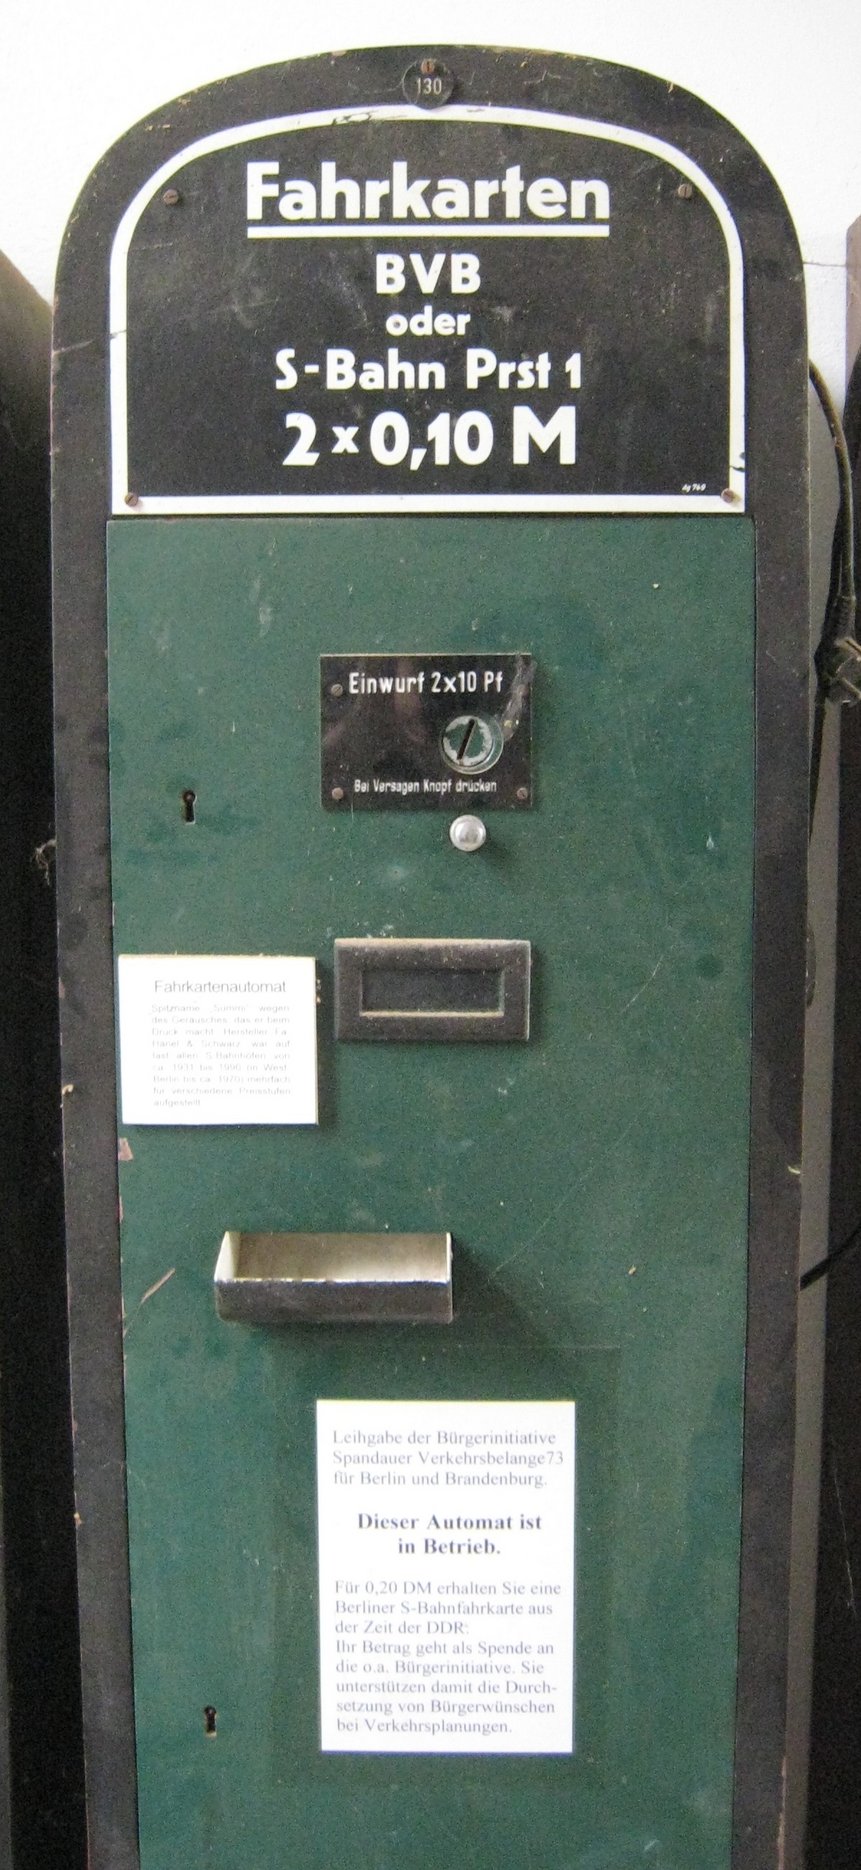 Das Foto zeigt einen historischen Fahrkartenautomat.